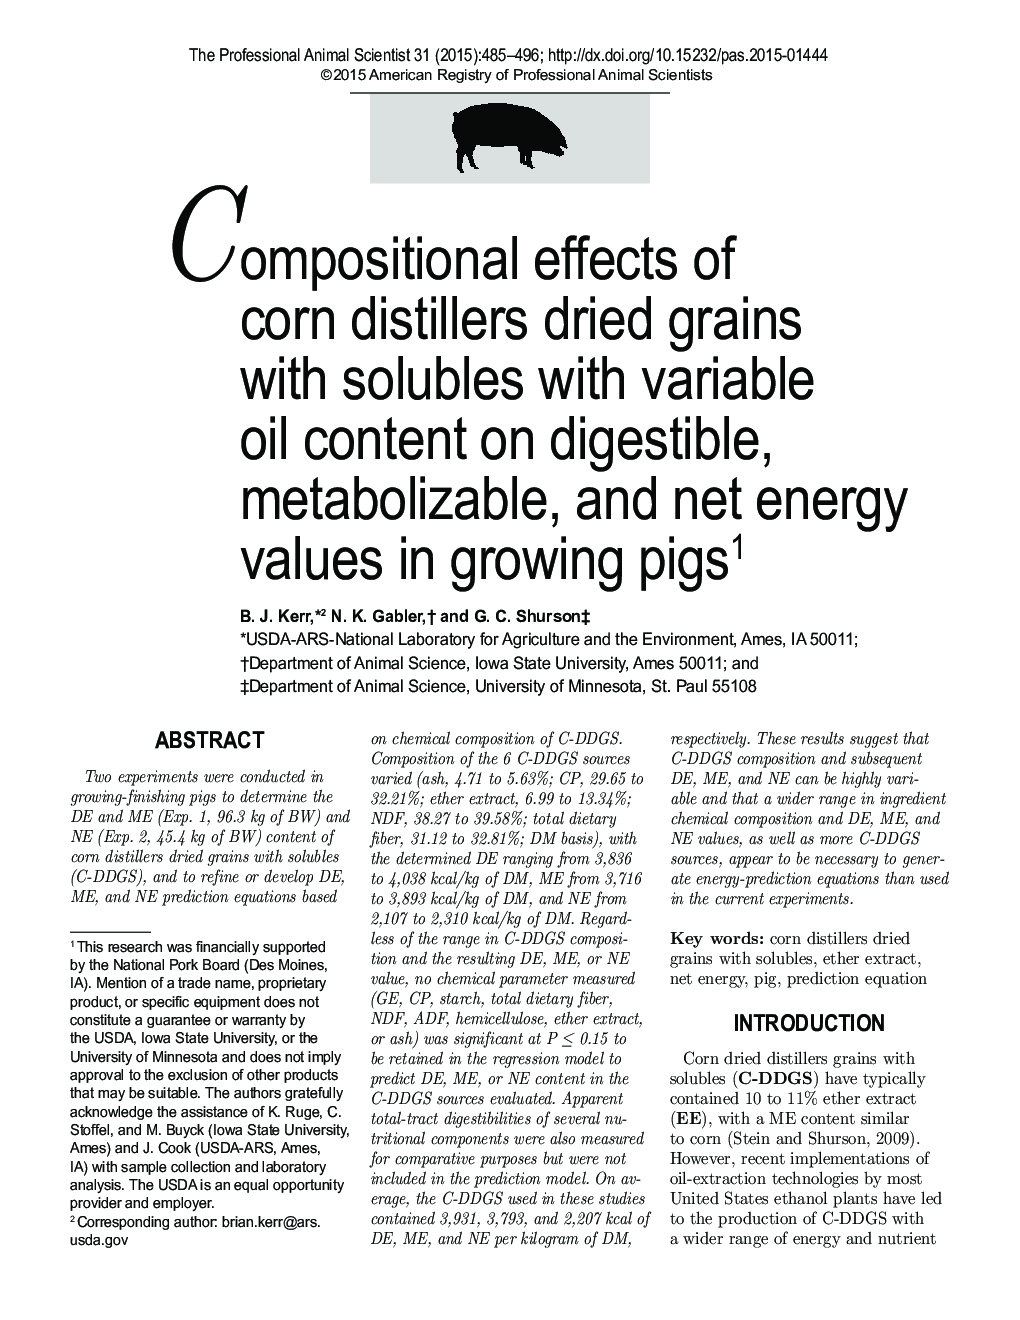 اثرات ترکیب دانه های خشک شده ذرت با محلول های حاوی روغن متغیر در مقدار قابل هضم، قابل متابولیسم و ​​انرژی خالص در خوک های در حال رشد 1 